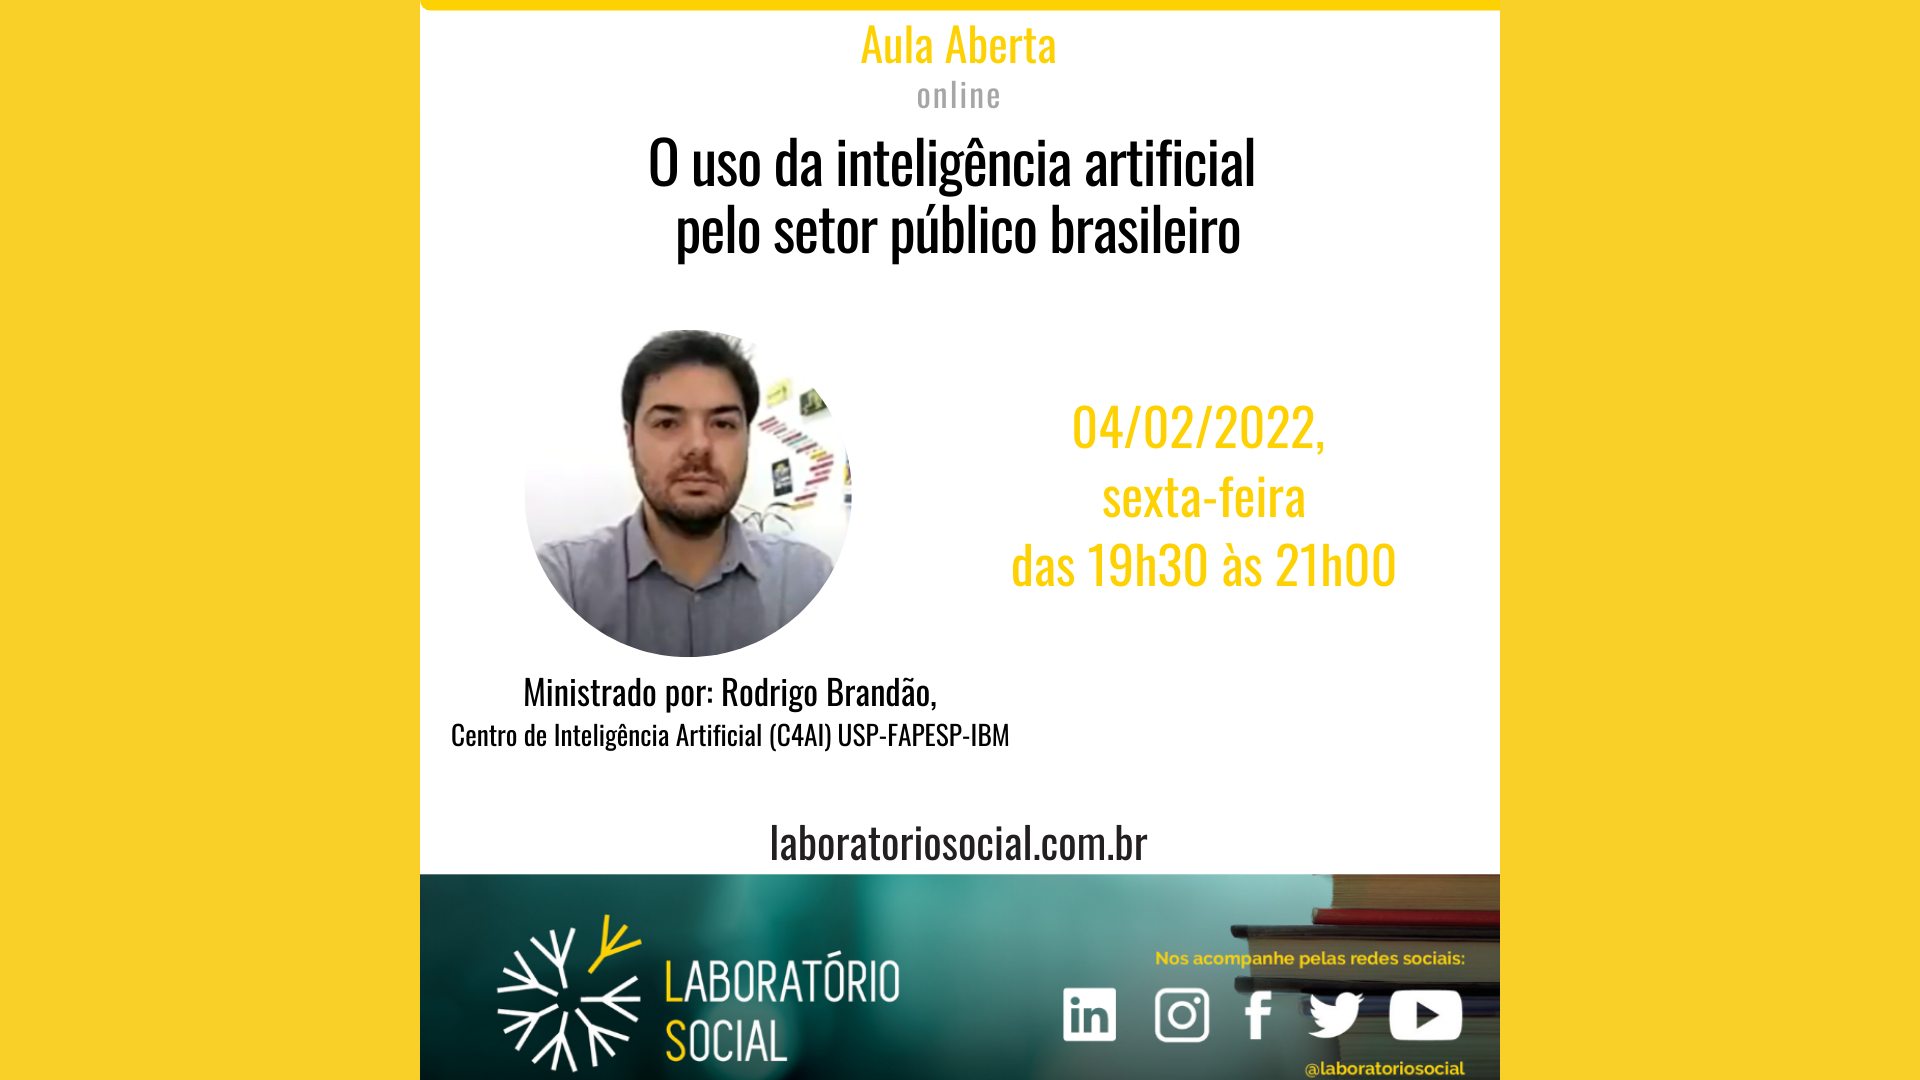 O uso da inteligência artificial pelo setor público brasileiro